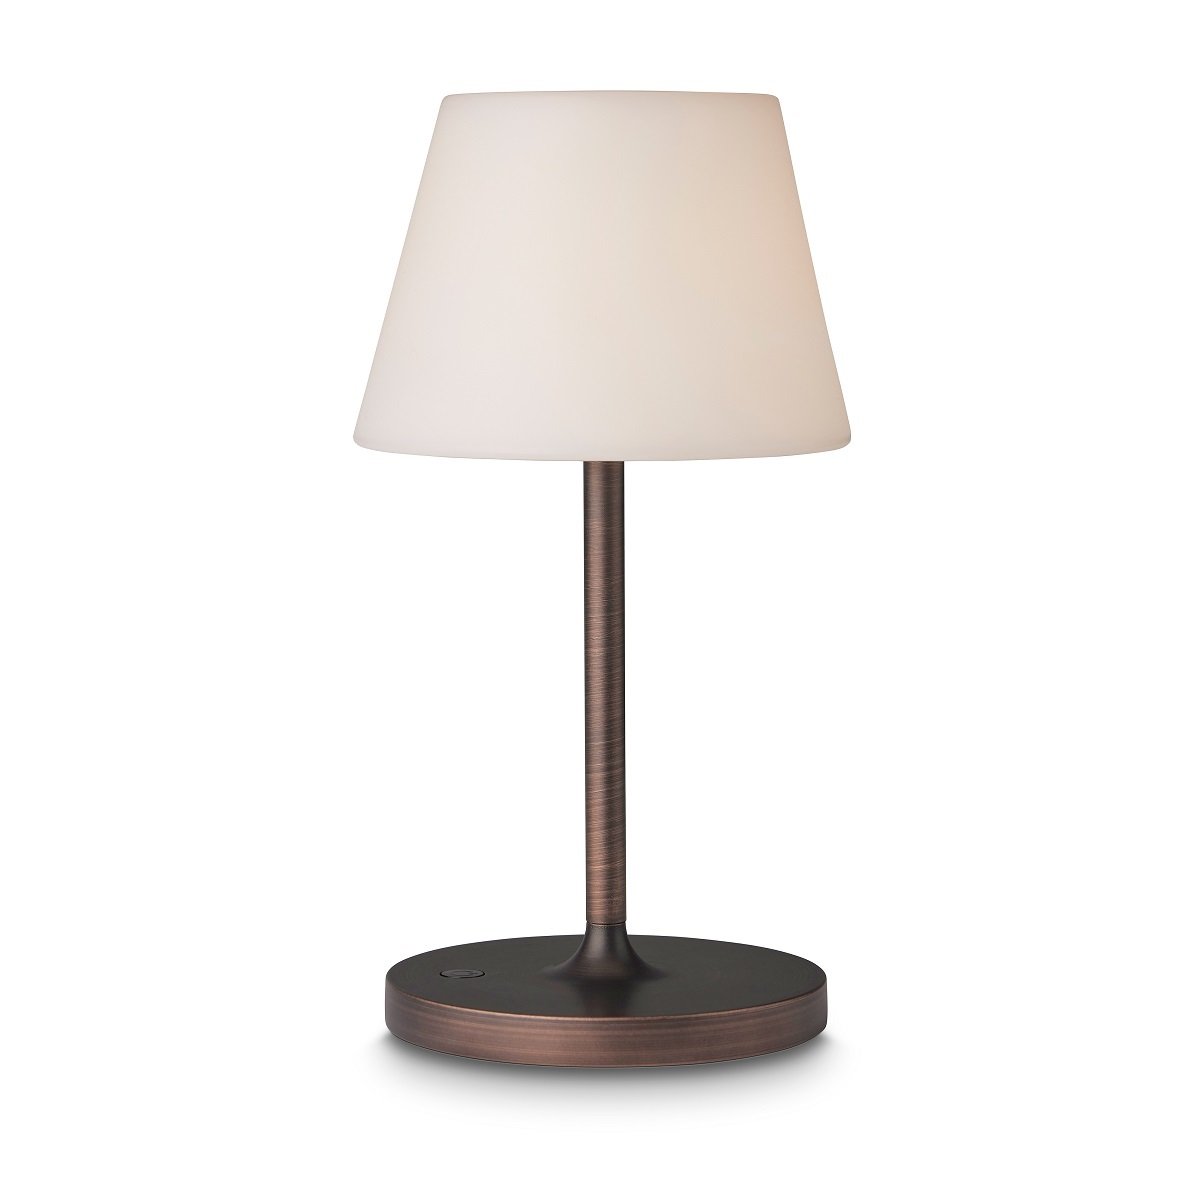 Shop Tischleuchte & Northern 15cm Design kupfer 800940 Halo New Lampen online kaufen antik im --> Leuchten